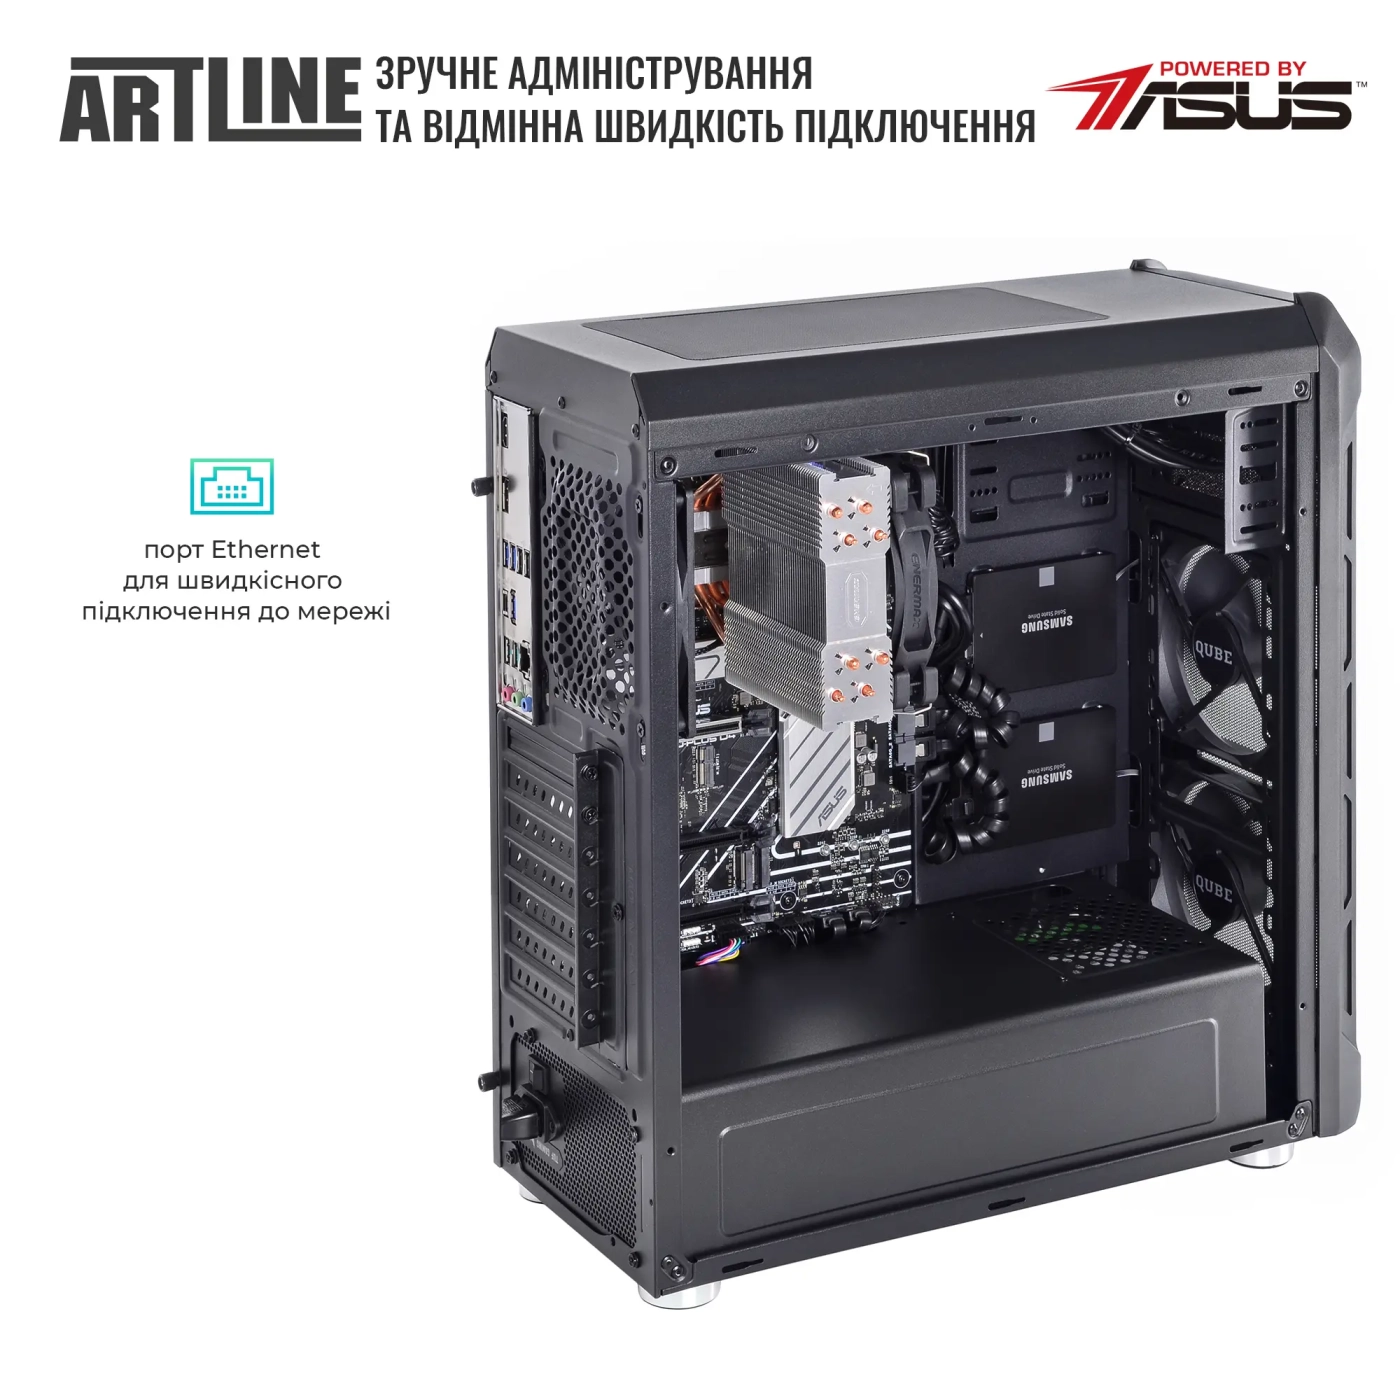 Купить Сервер ARTLINE Business T27 (T27v31) - фото 7